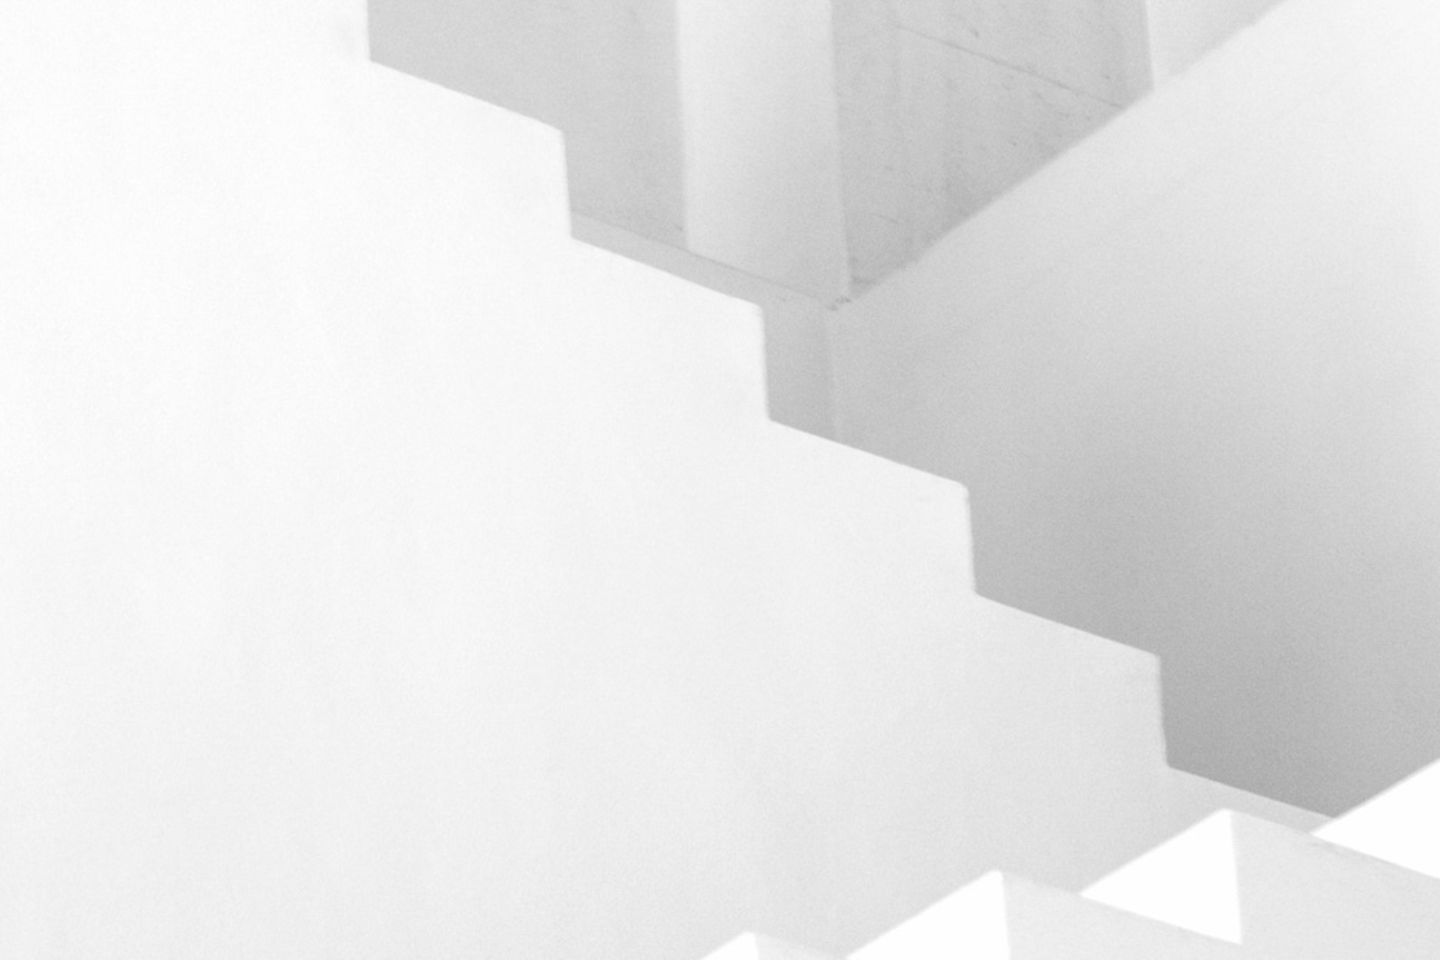 Escada branca e cinza na frente de um fundo branco